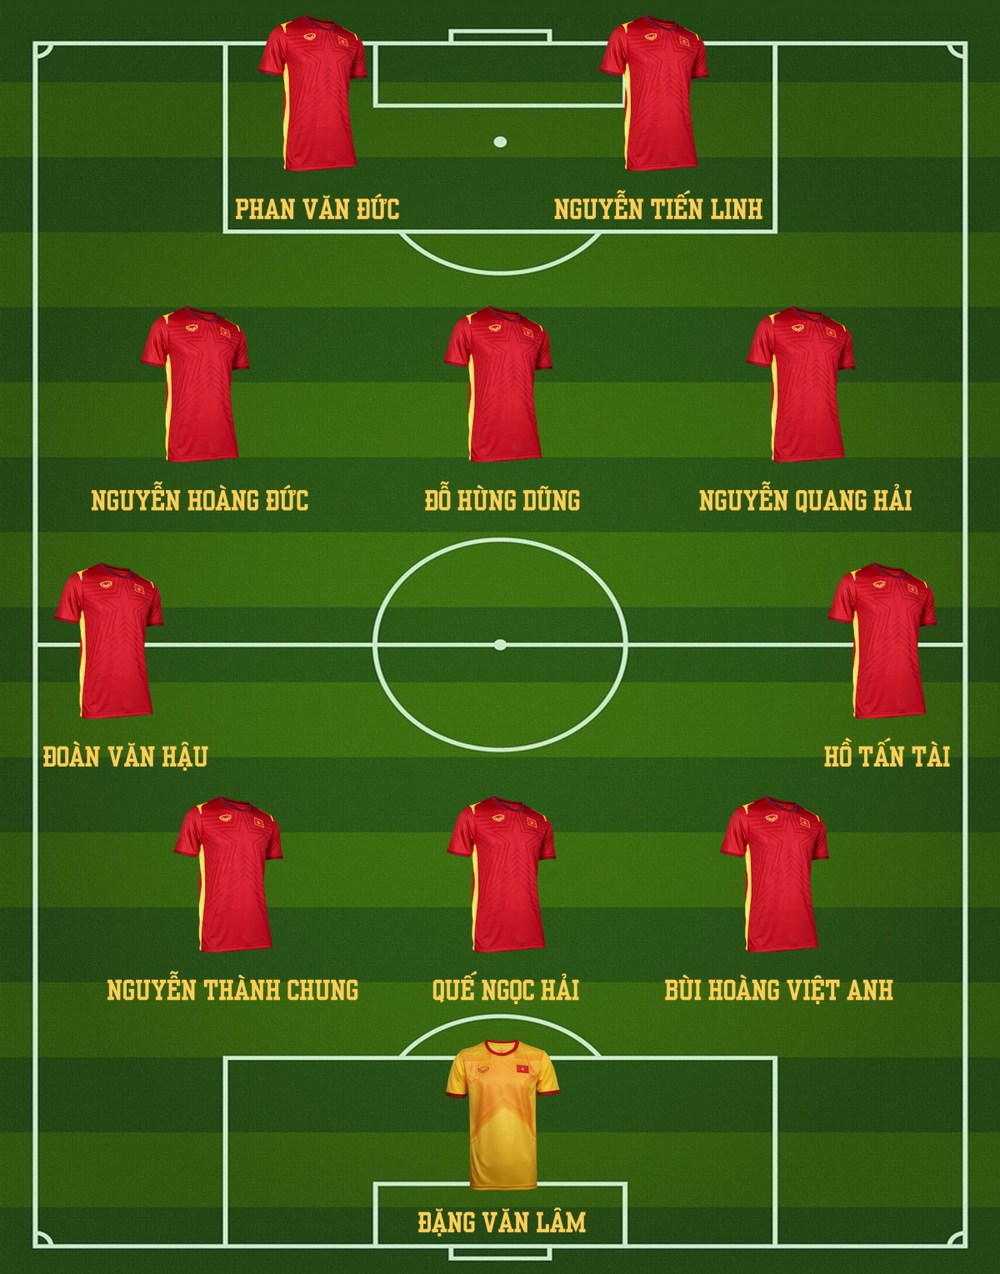 Dự đoán đội hình tối ưu của ĐT Việt Nam tại AFF Cup 2022 - Ảnh 12.